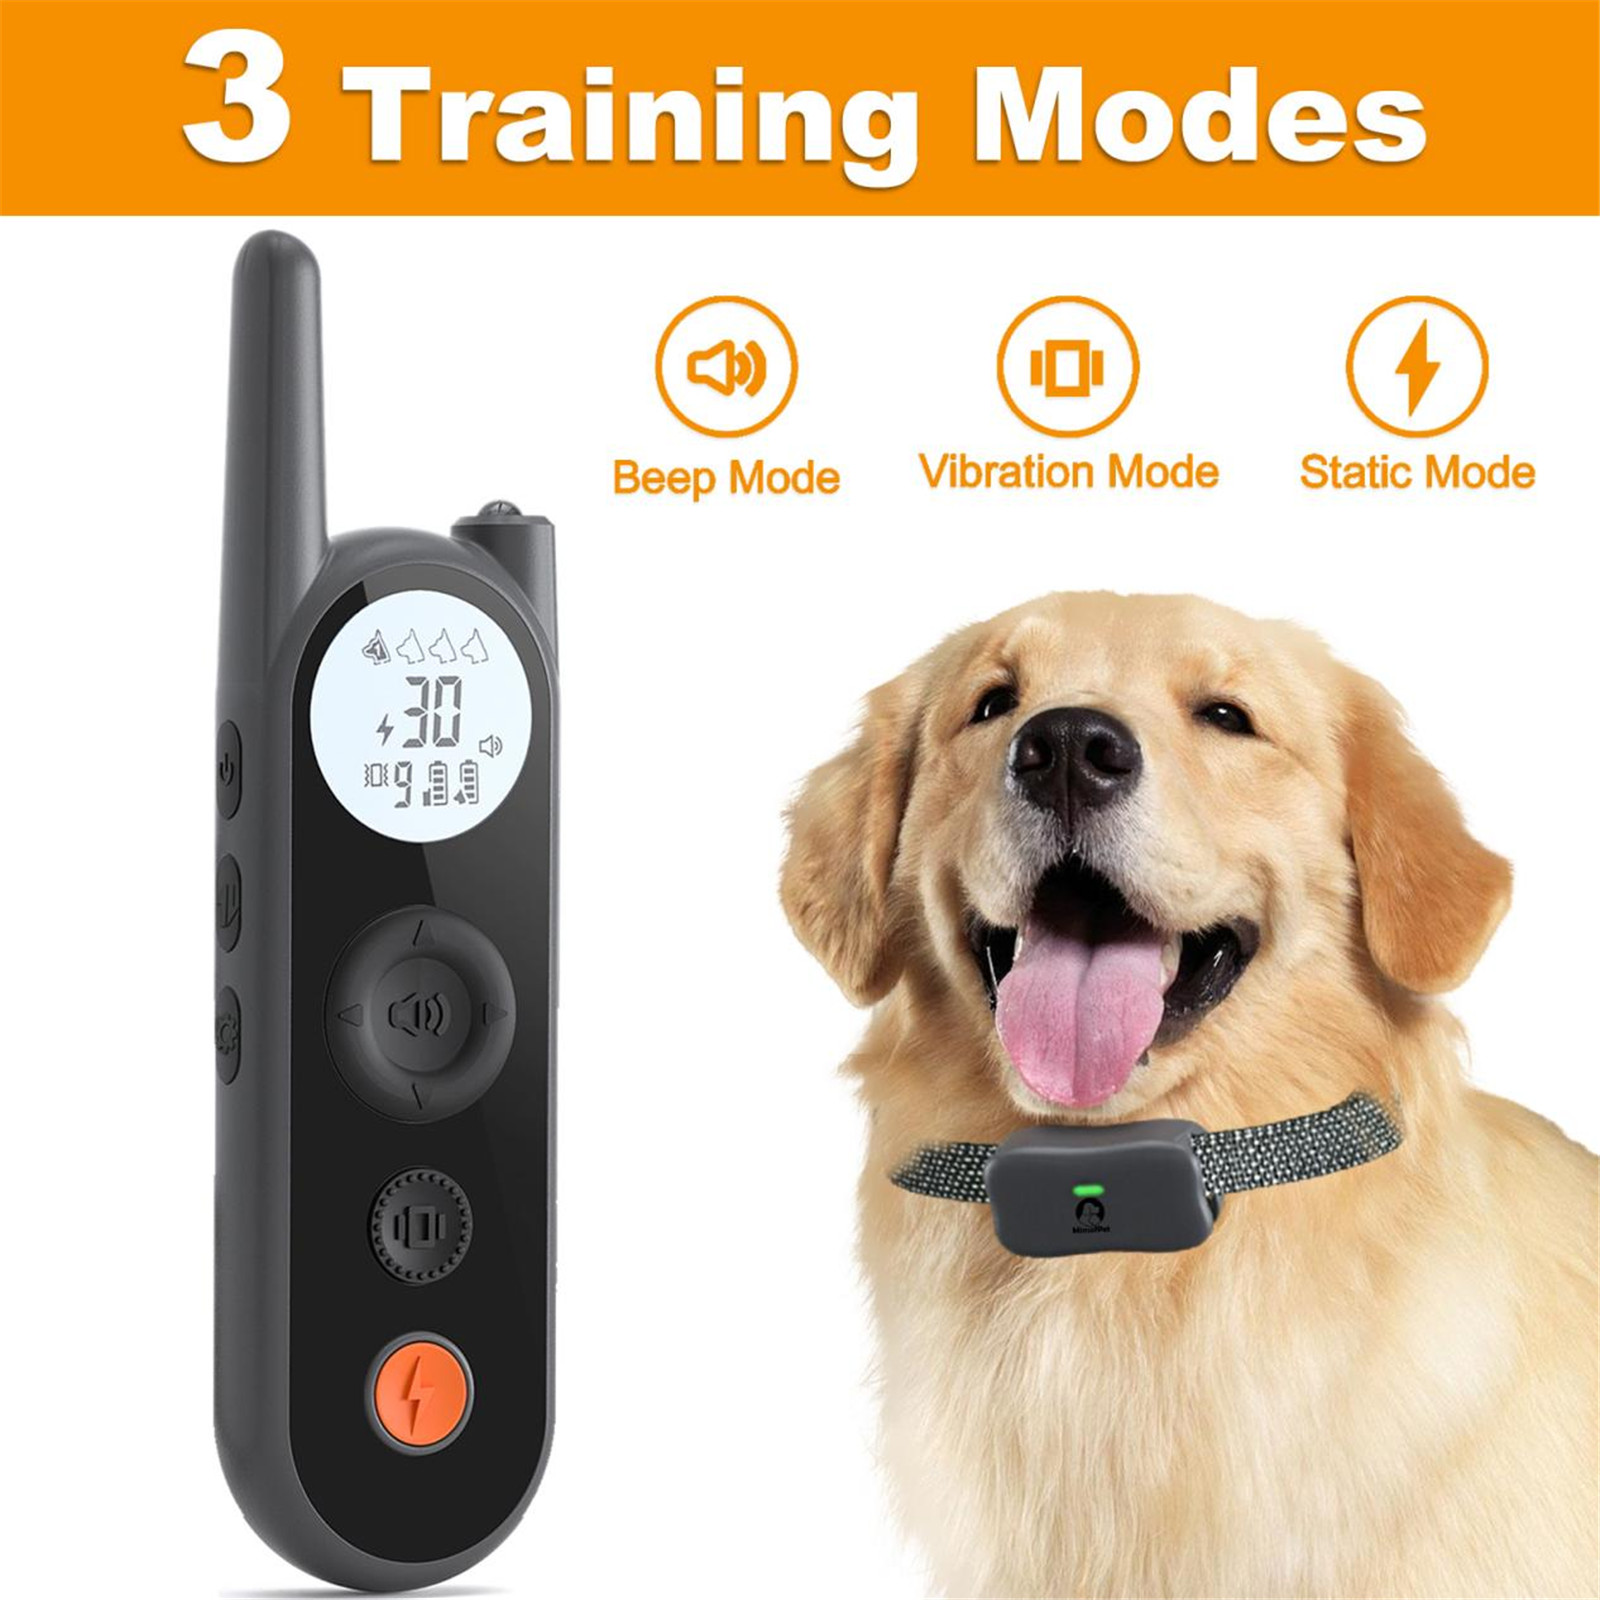 Mimofpet X2 Model Köpek Eğitim Tasması Hakkında Tanıtım01 (11)